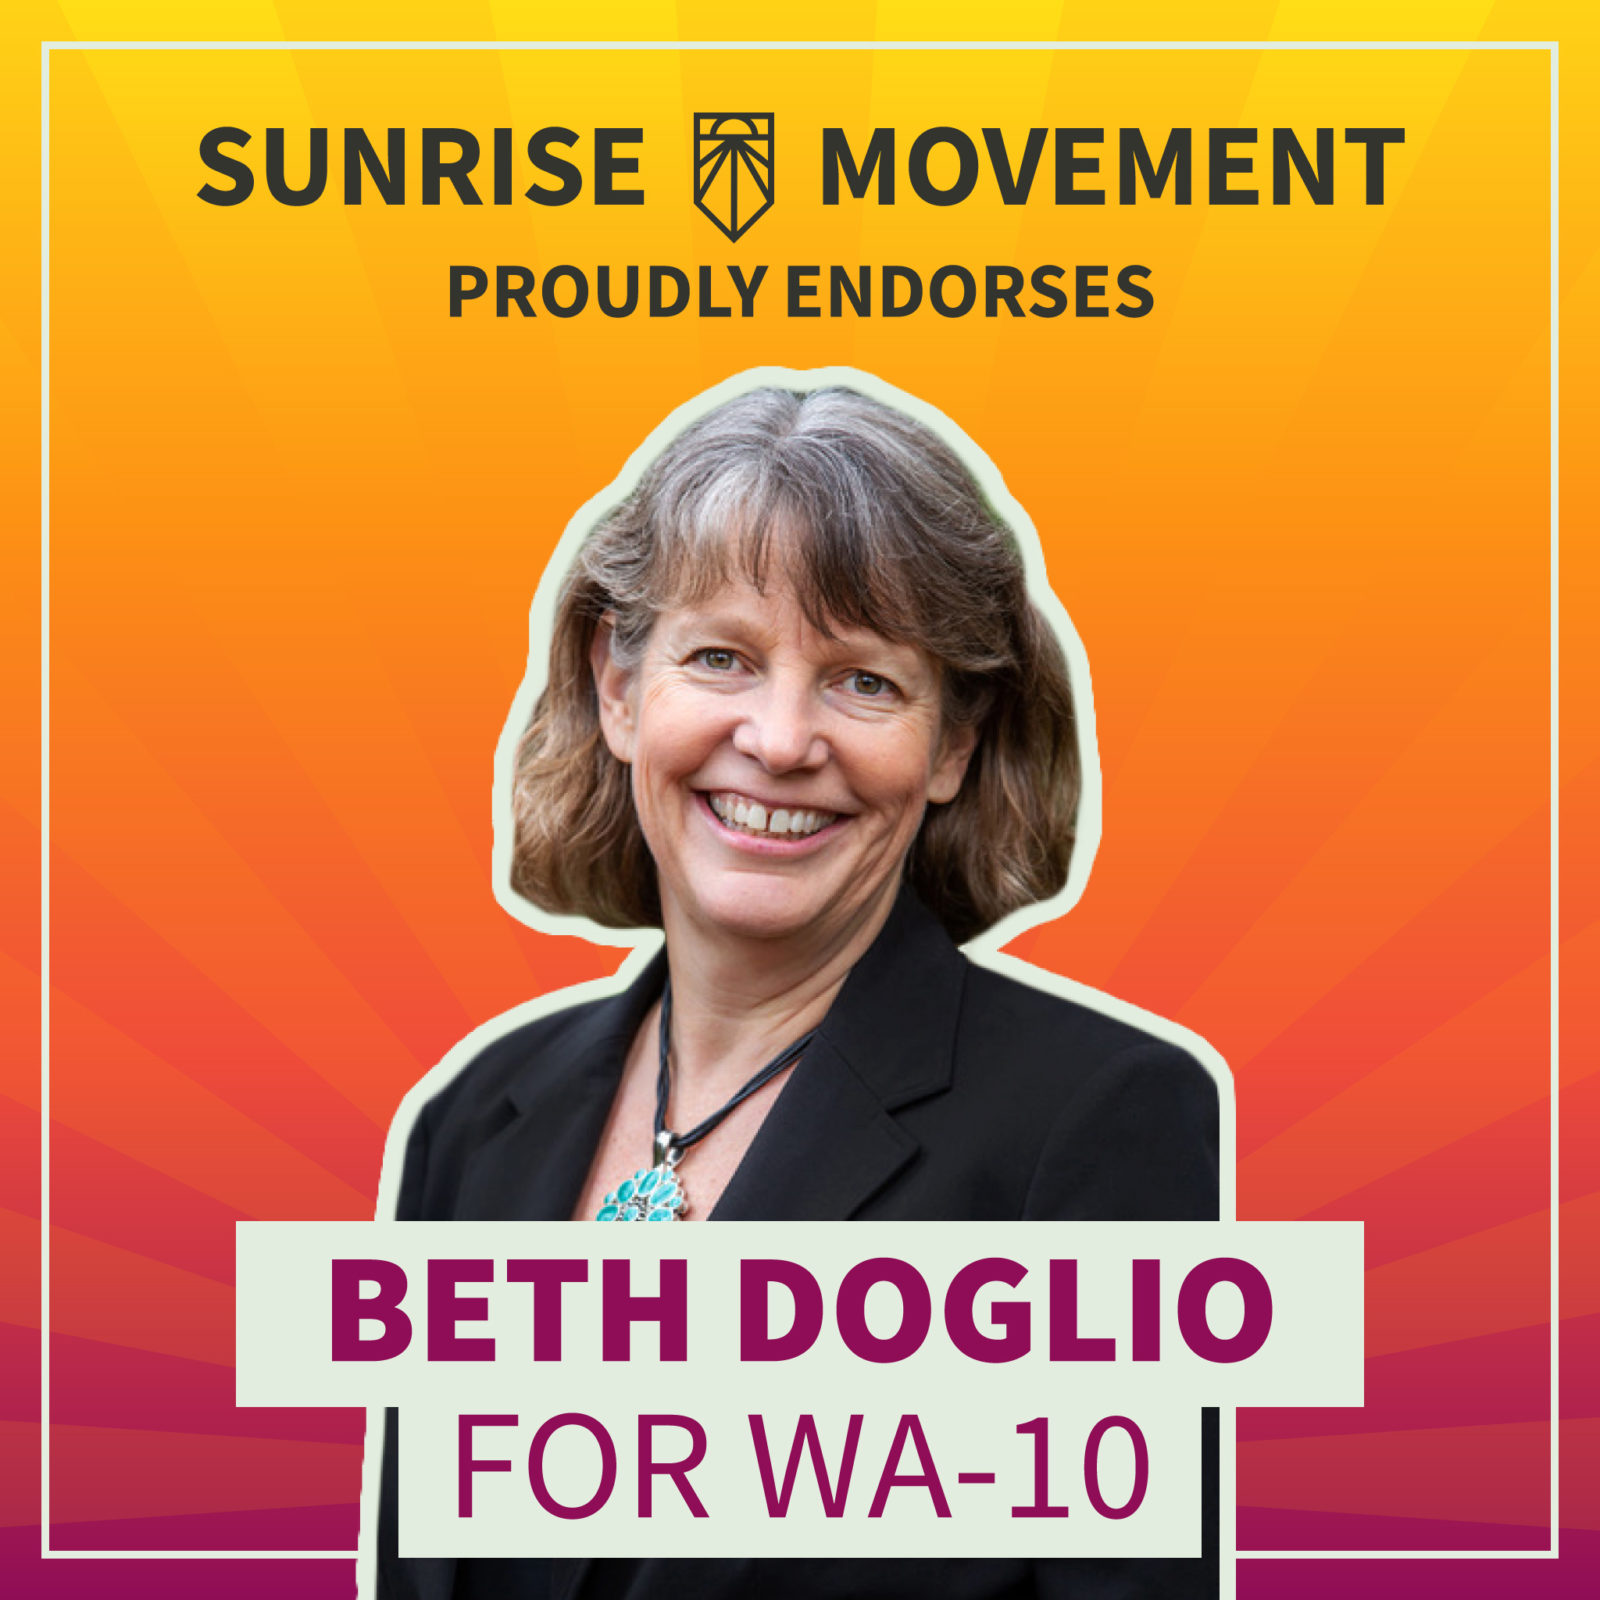 Una foto de Beth Doglio con texto: Sunrise Movement respalda con orgullo a Beth Doglio para WA-10.